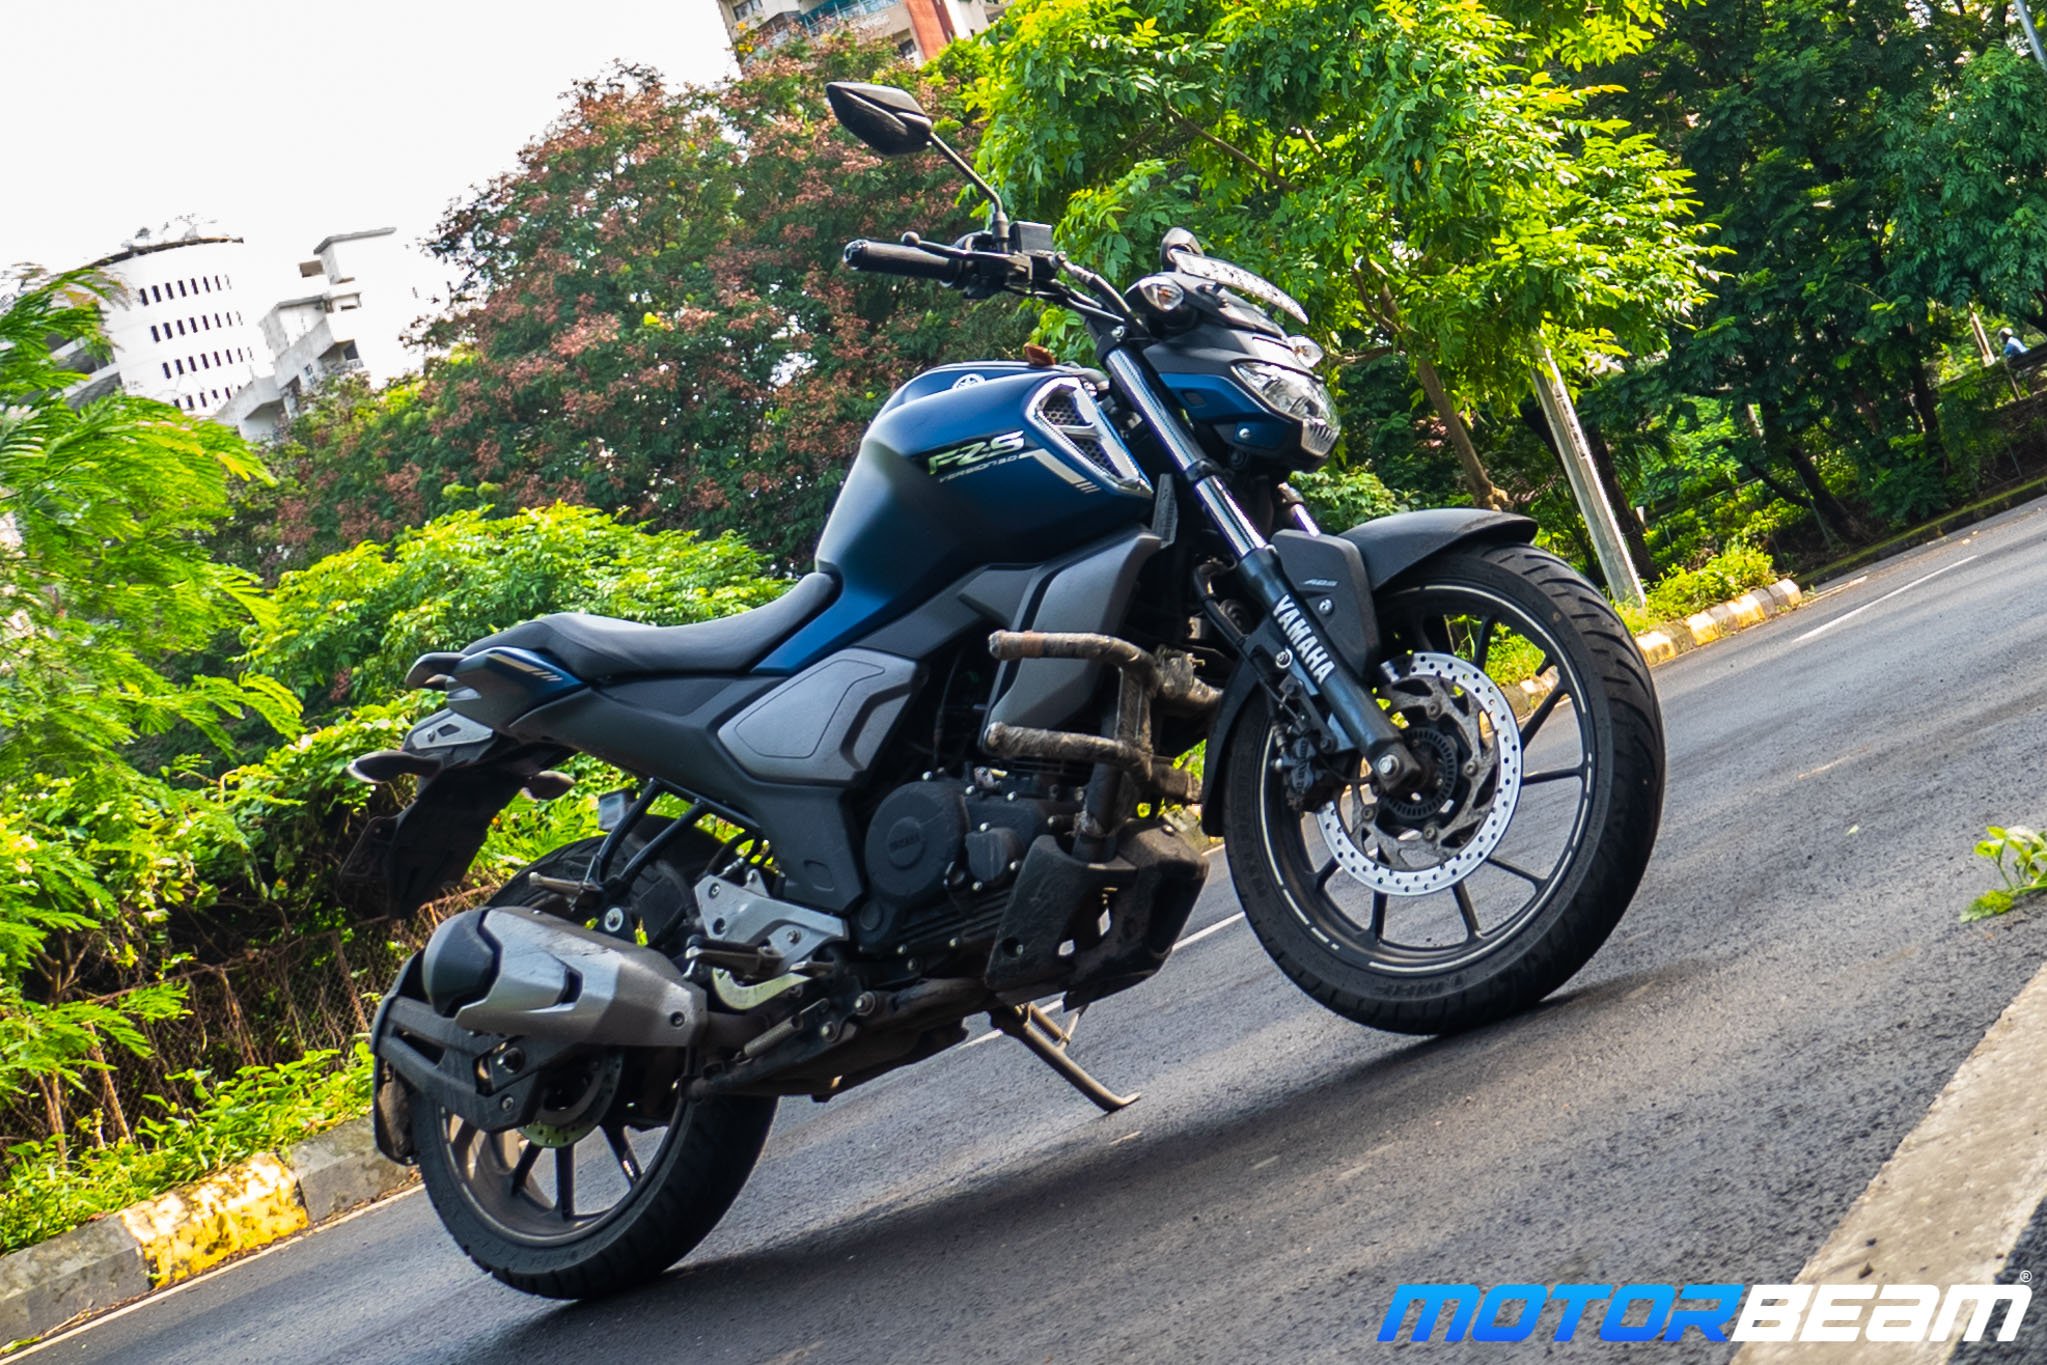 Fz Bike New Model 2020 Price In India